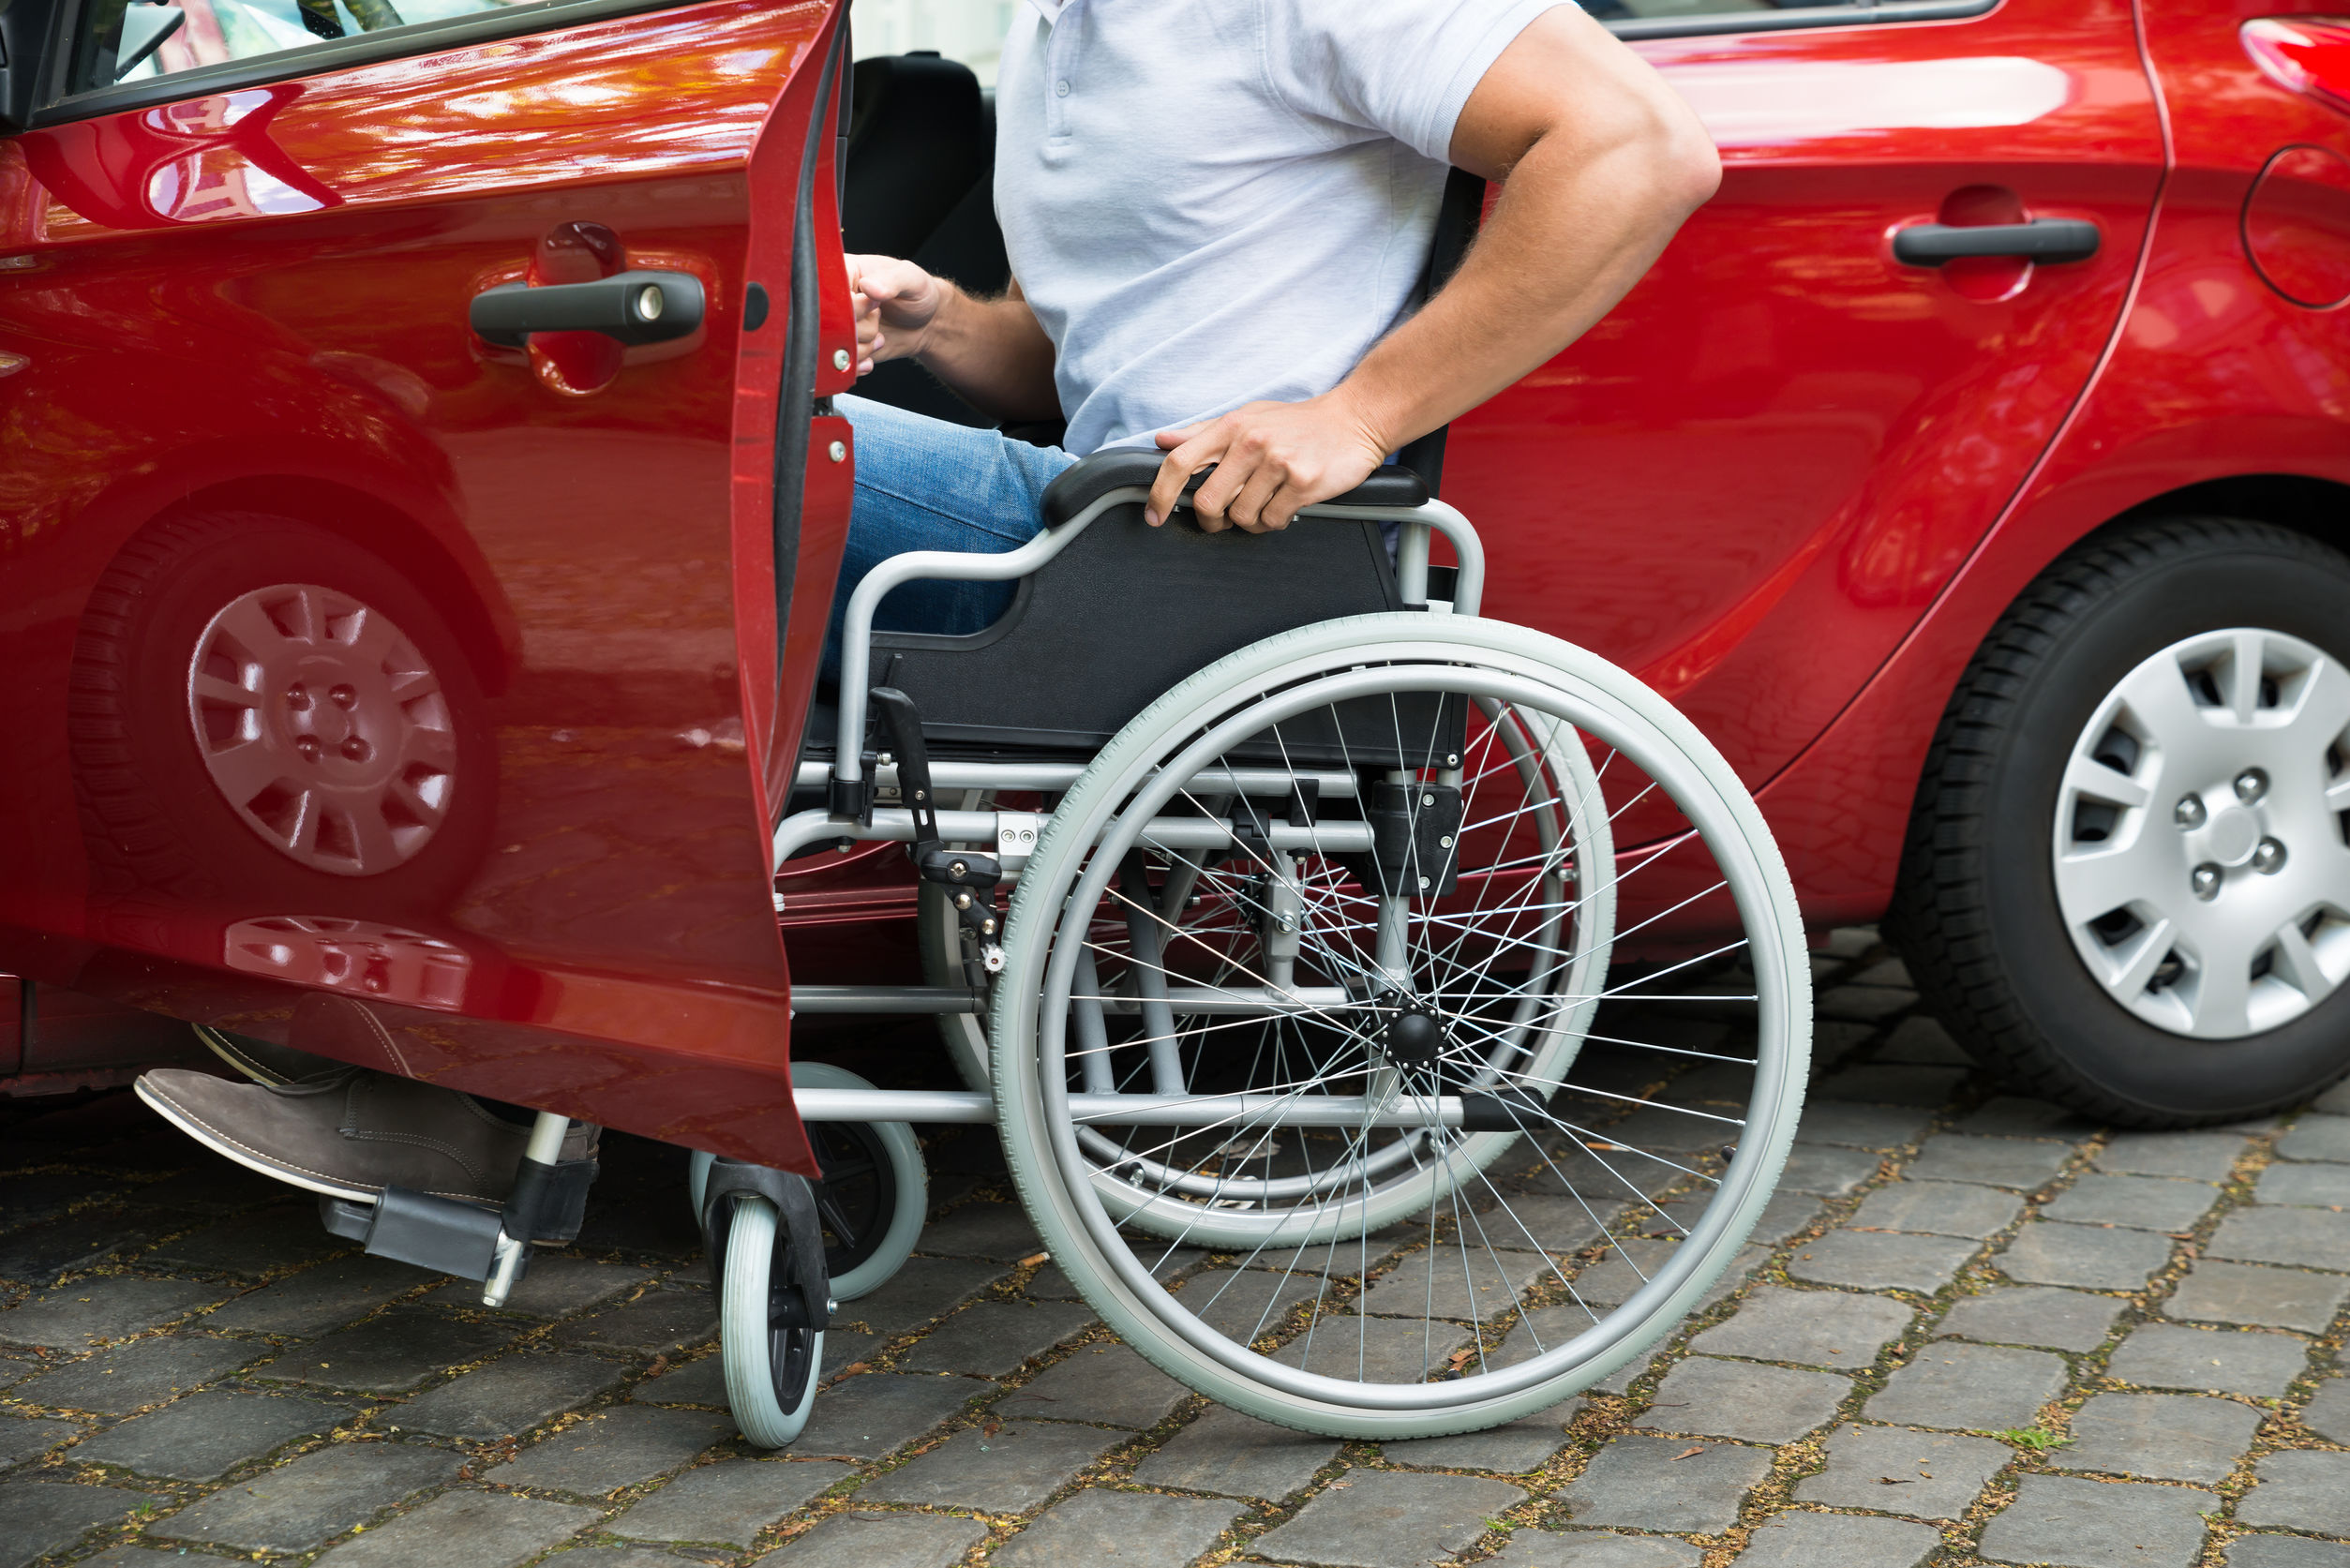 Транспортная доступность для инвалидов. Машина для инвалидов. Автомобиль для колясочников. Транспорт для инвалидов. Машина для людей с ограниченными возможностями.